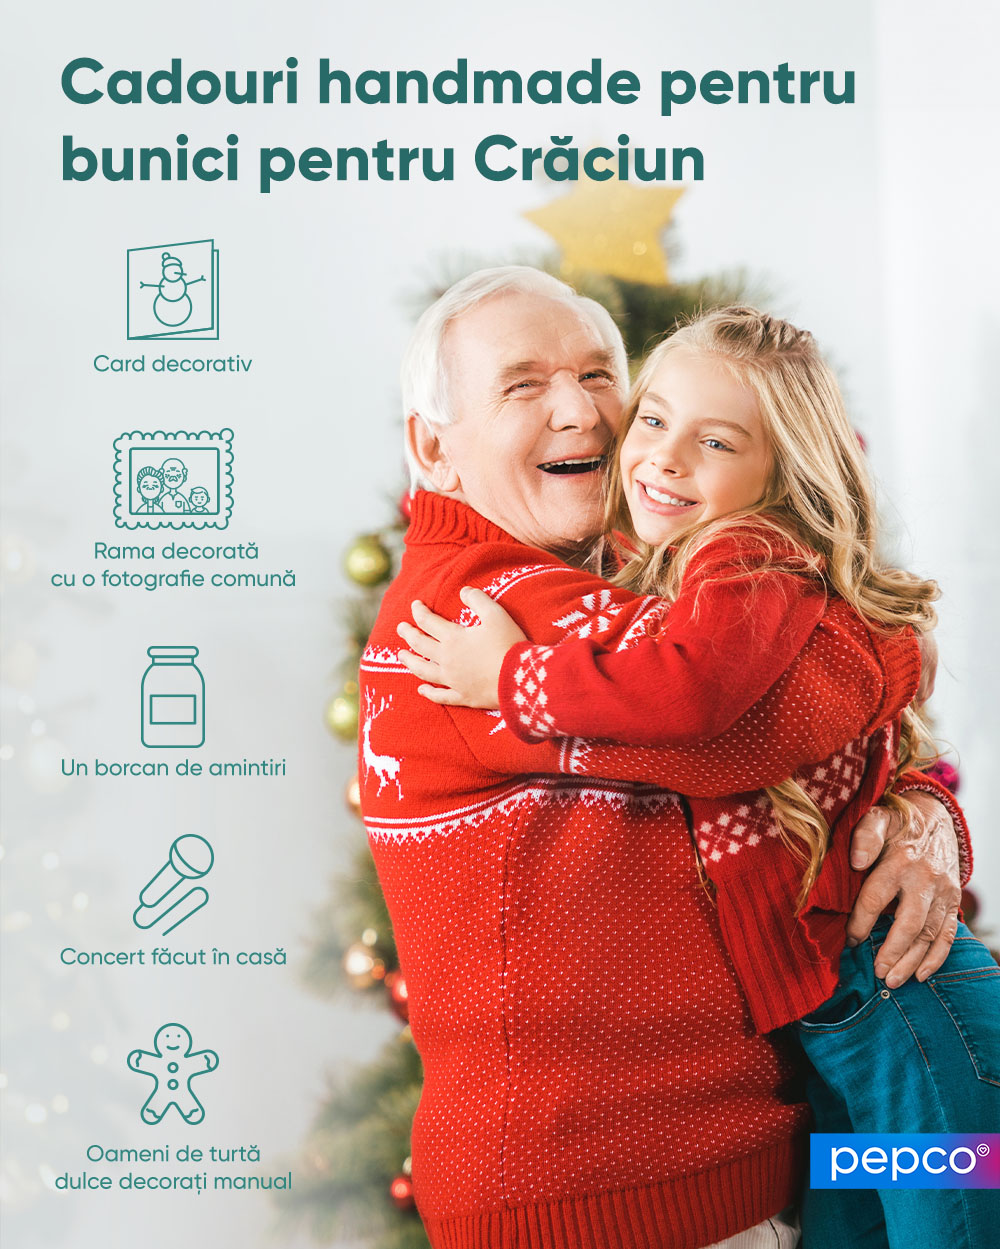 Infografic Pepco Cadouri handmade pentru bunici de Crăciun.